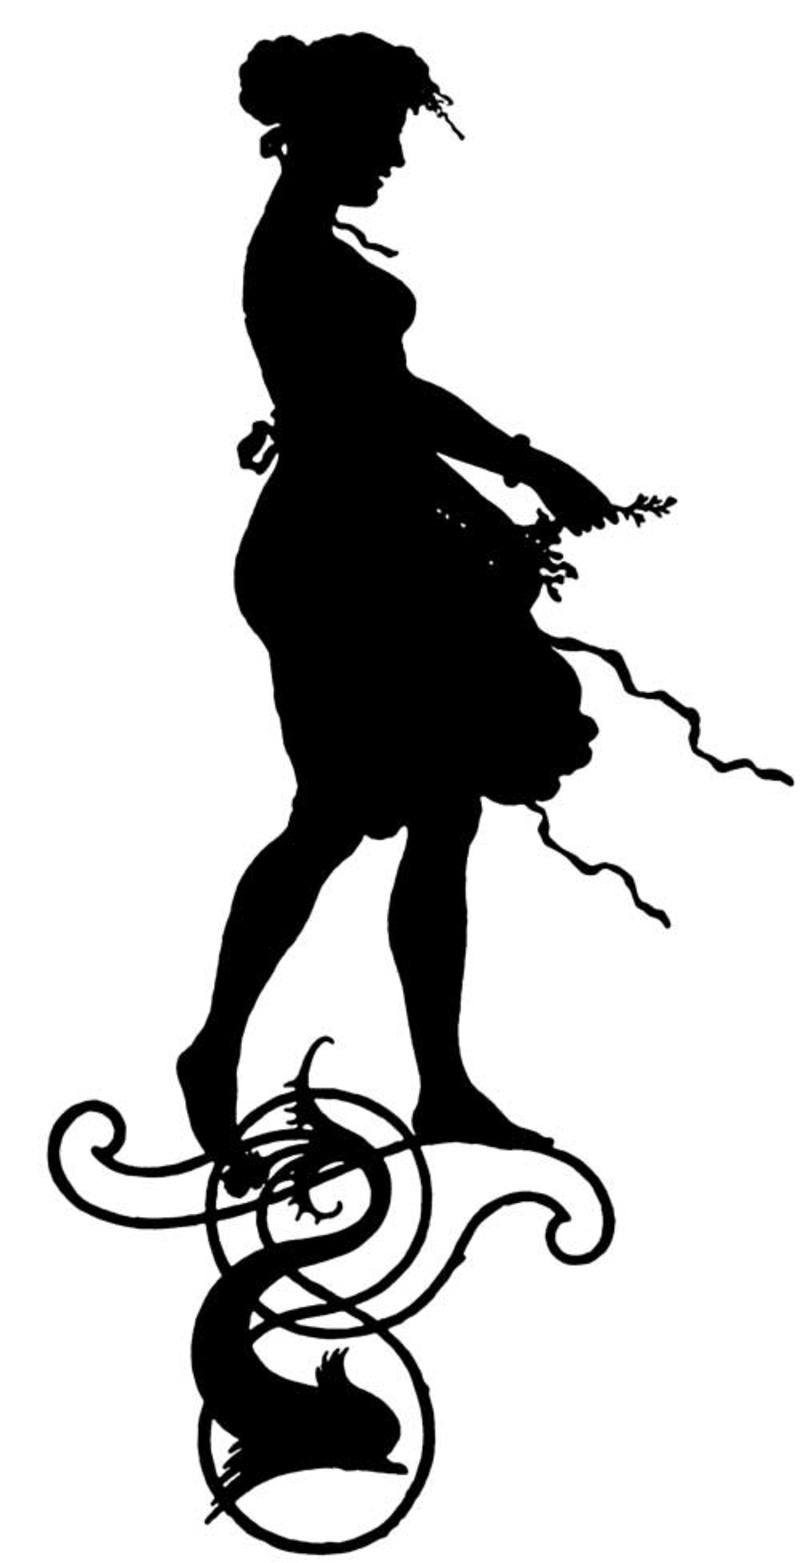 female-silhouette-2utyti.jpg